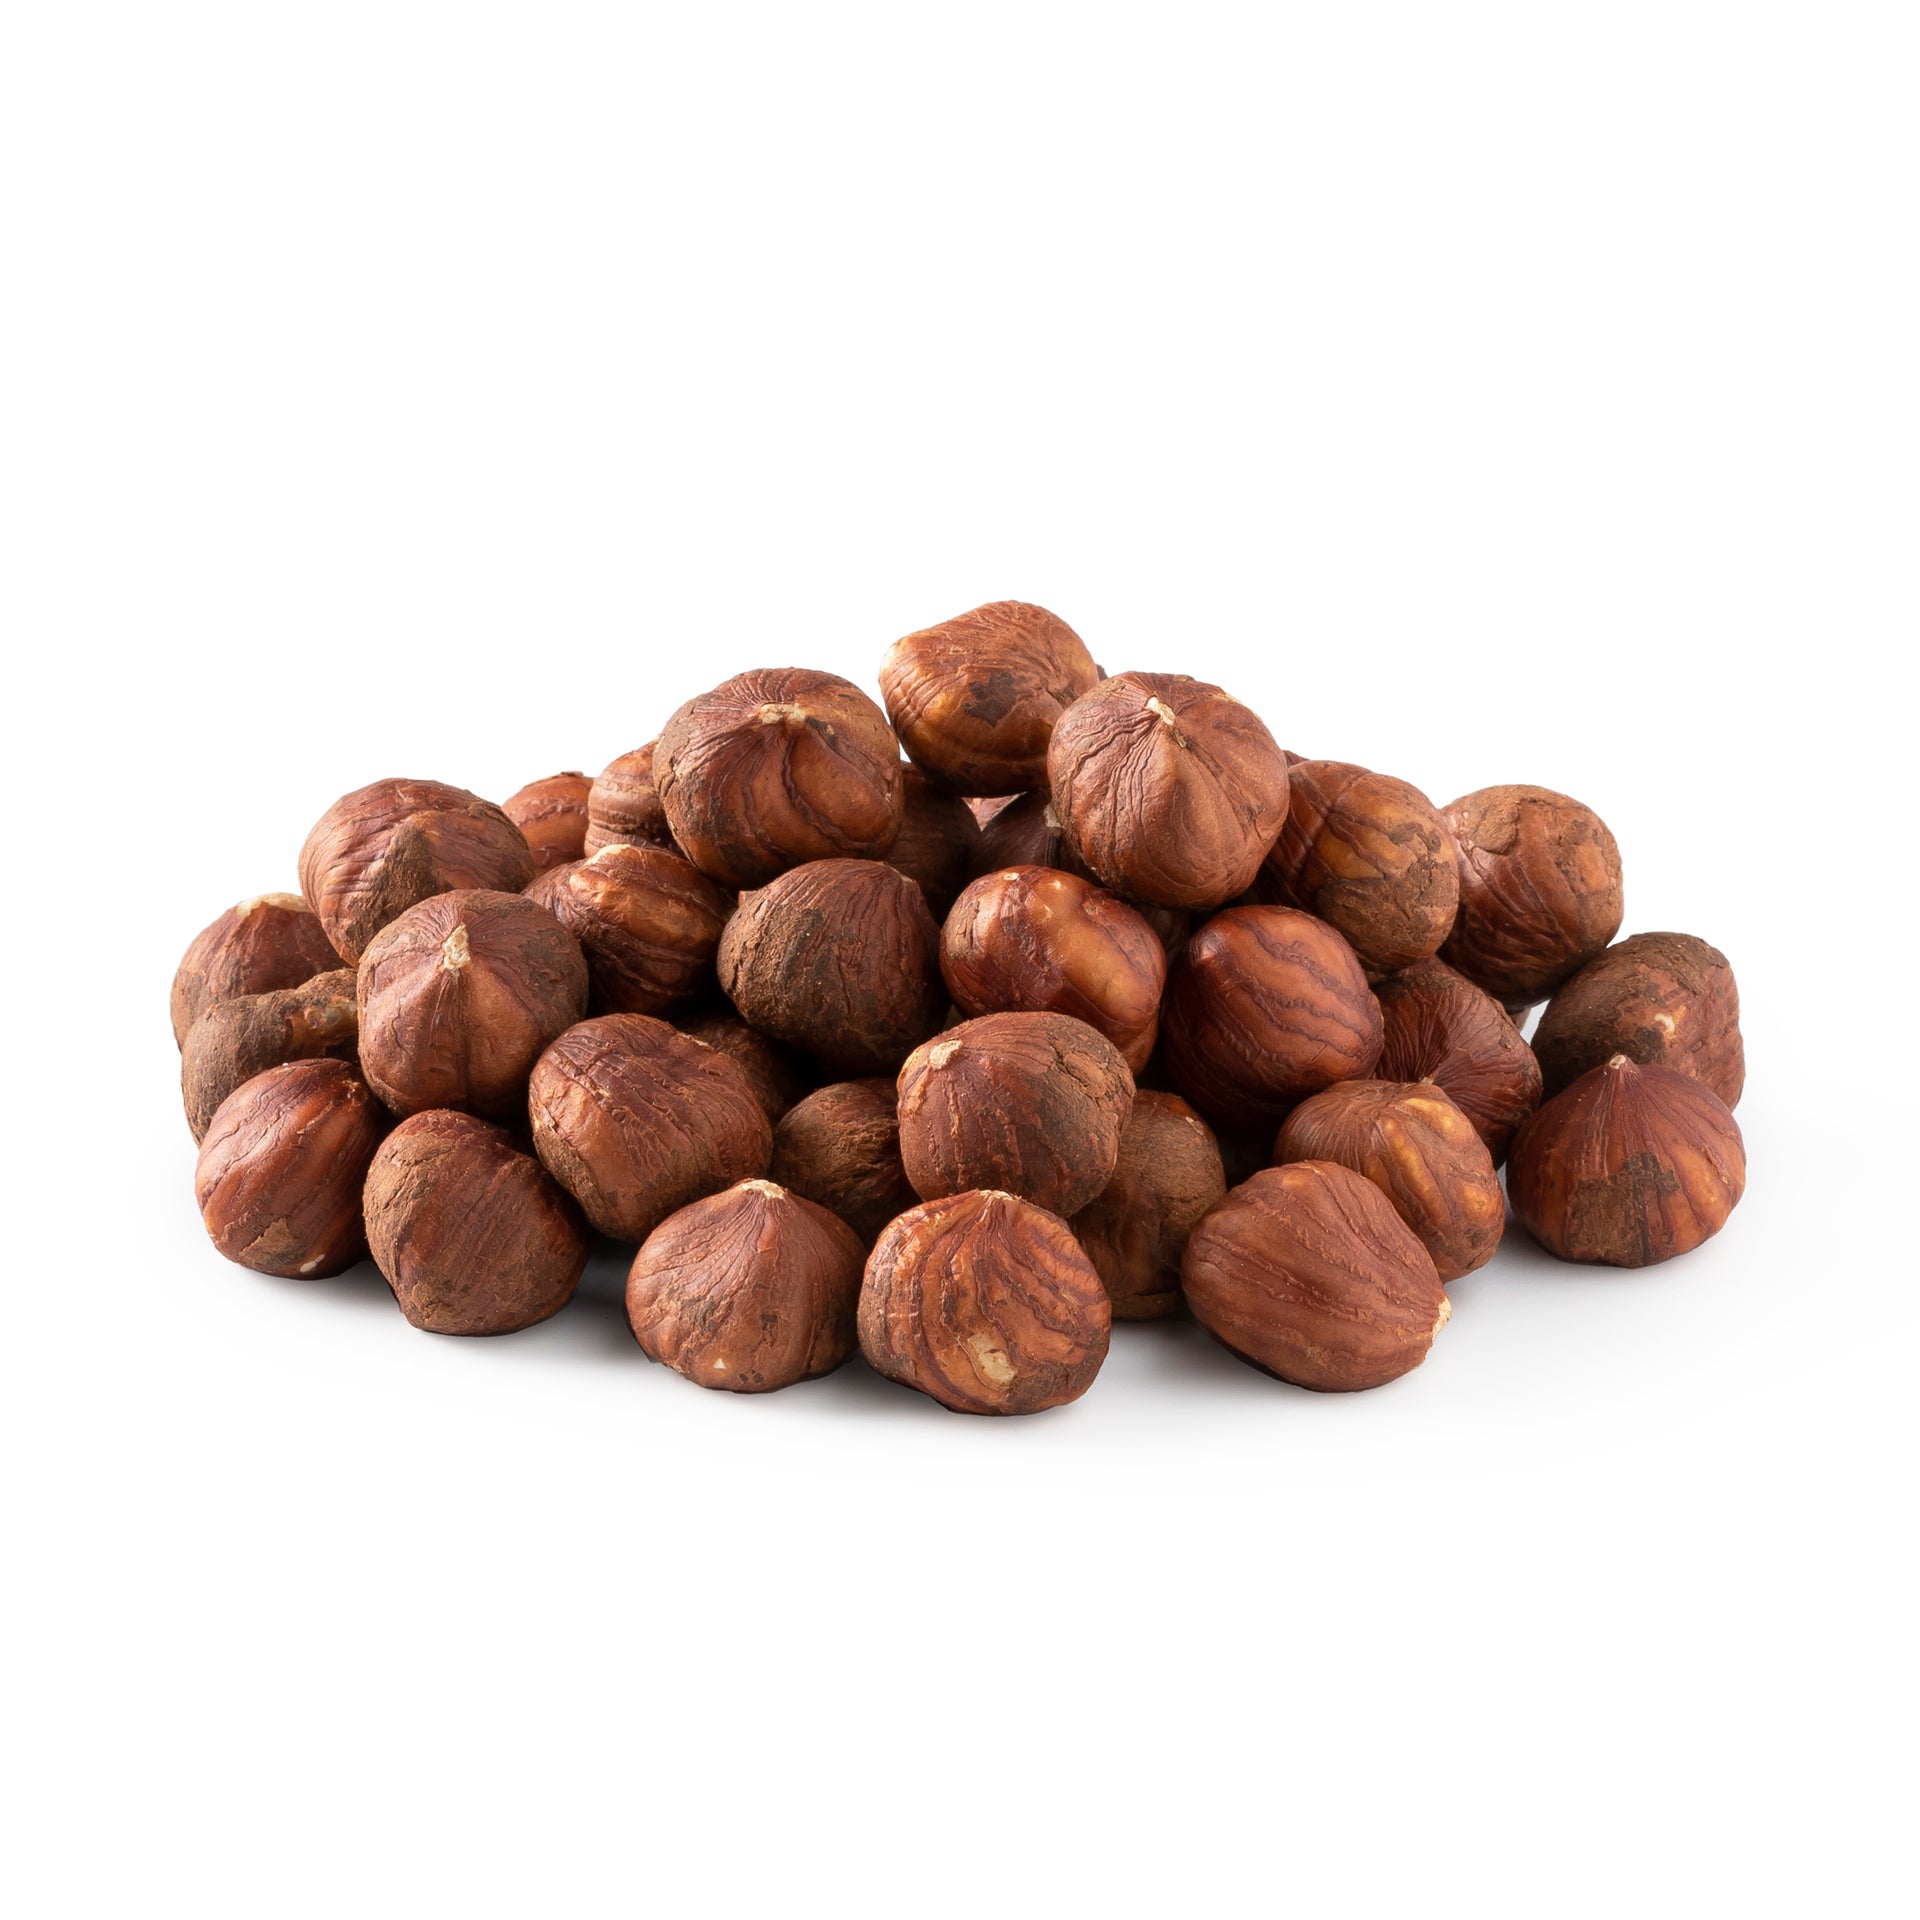 Oregon Raw Hazelnuts (Filberts)